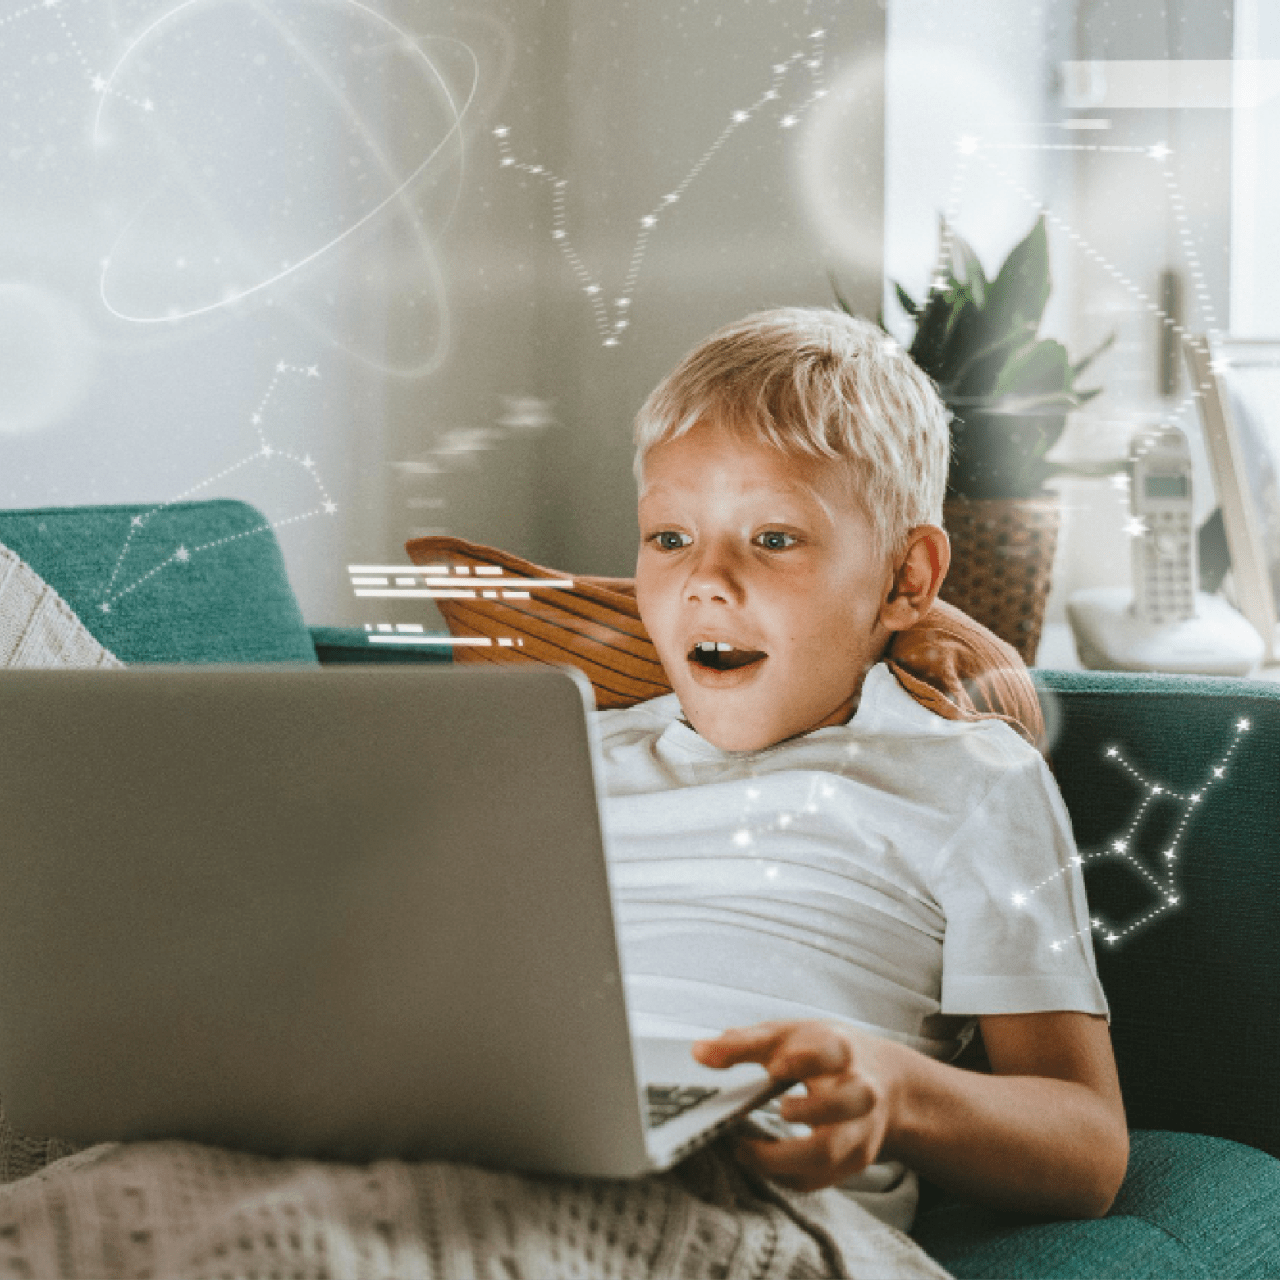 Çocuğunuza Tablet, Laptop Veya Masaüstü Bilgisayar Alırken Nelere Dikkat Etmelisiniz?